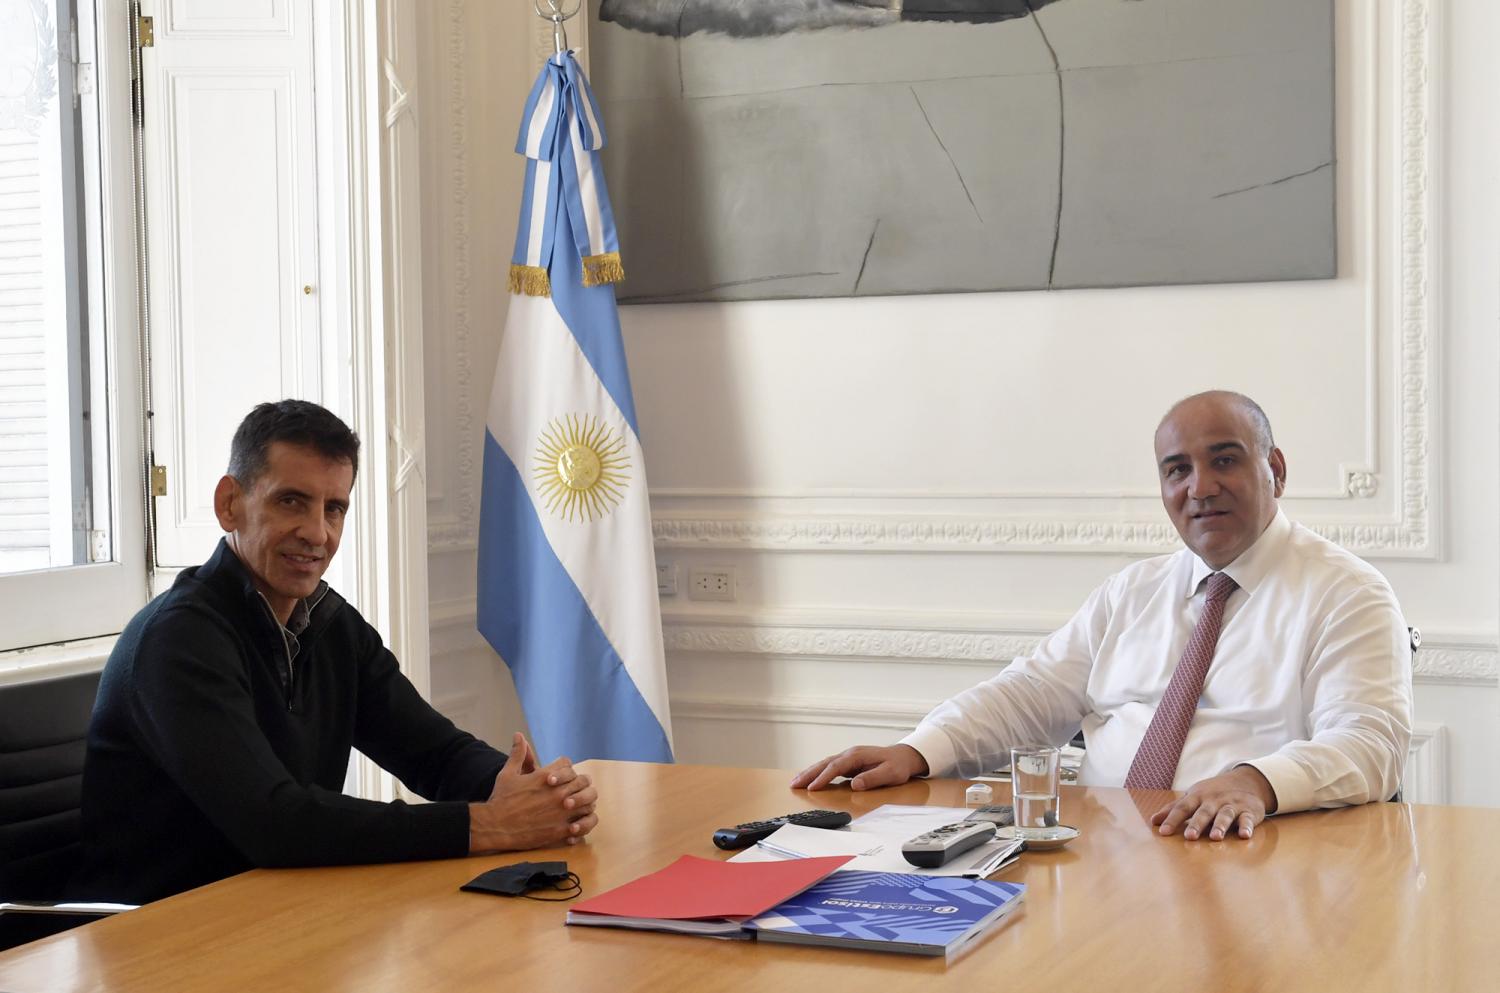 REUNIÓN. El jefe de Gabinete recibió al funcionario del Enohsa Gerónimo Vargas Aignasse.